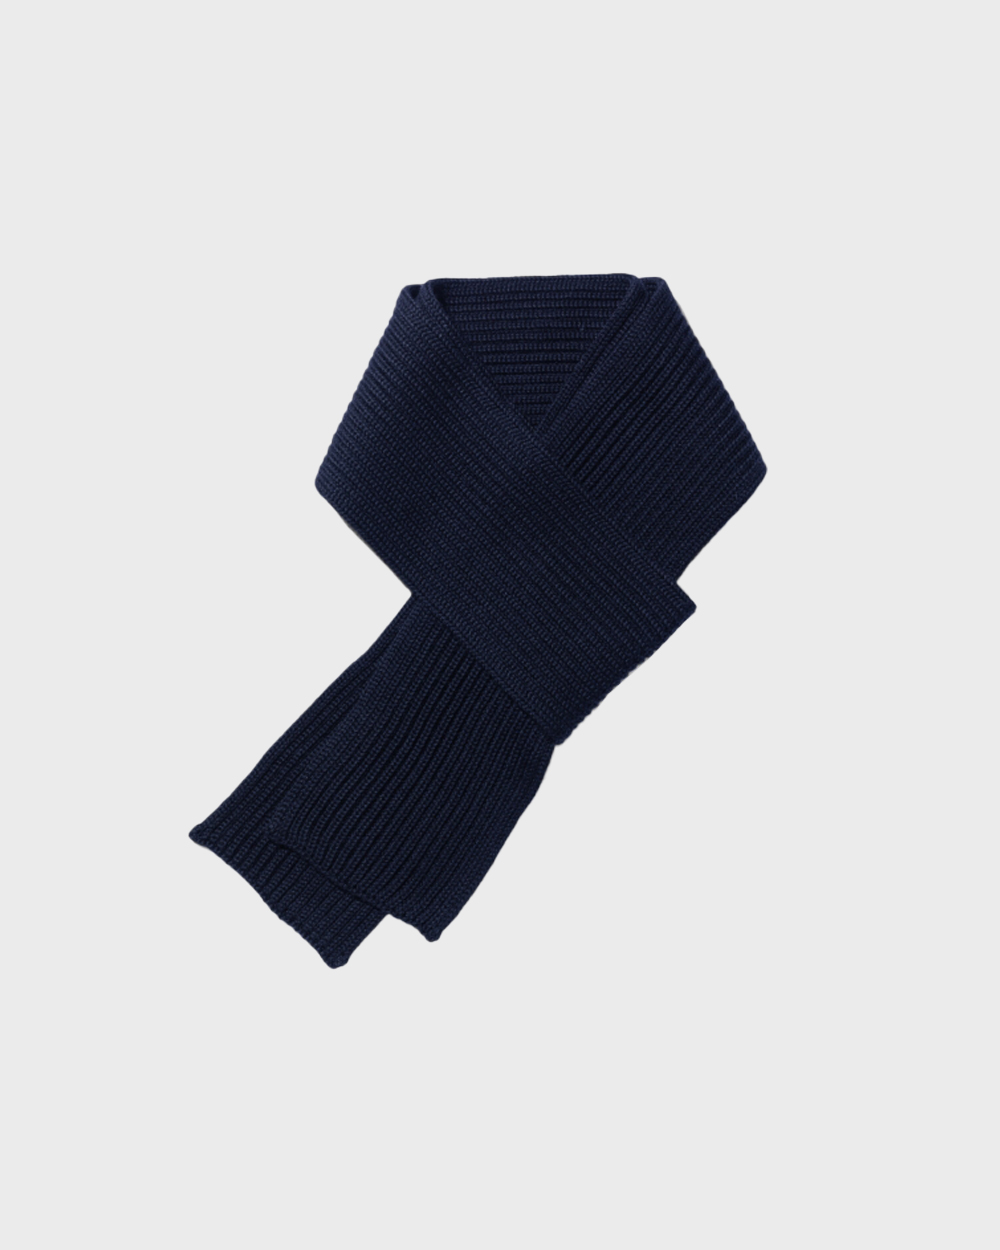 안데르센 안데르센 Short scarf (Navy blue)